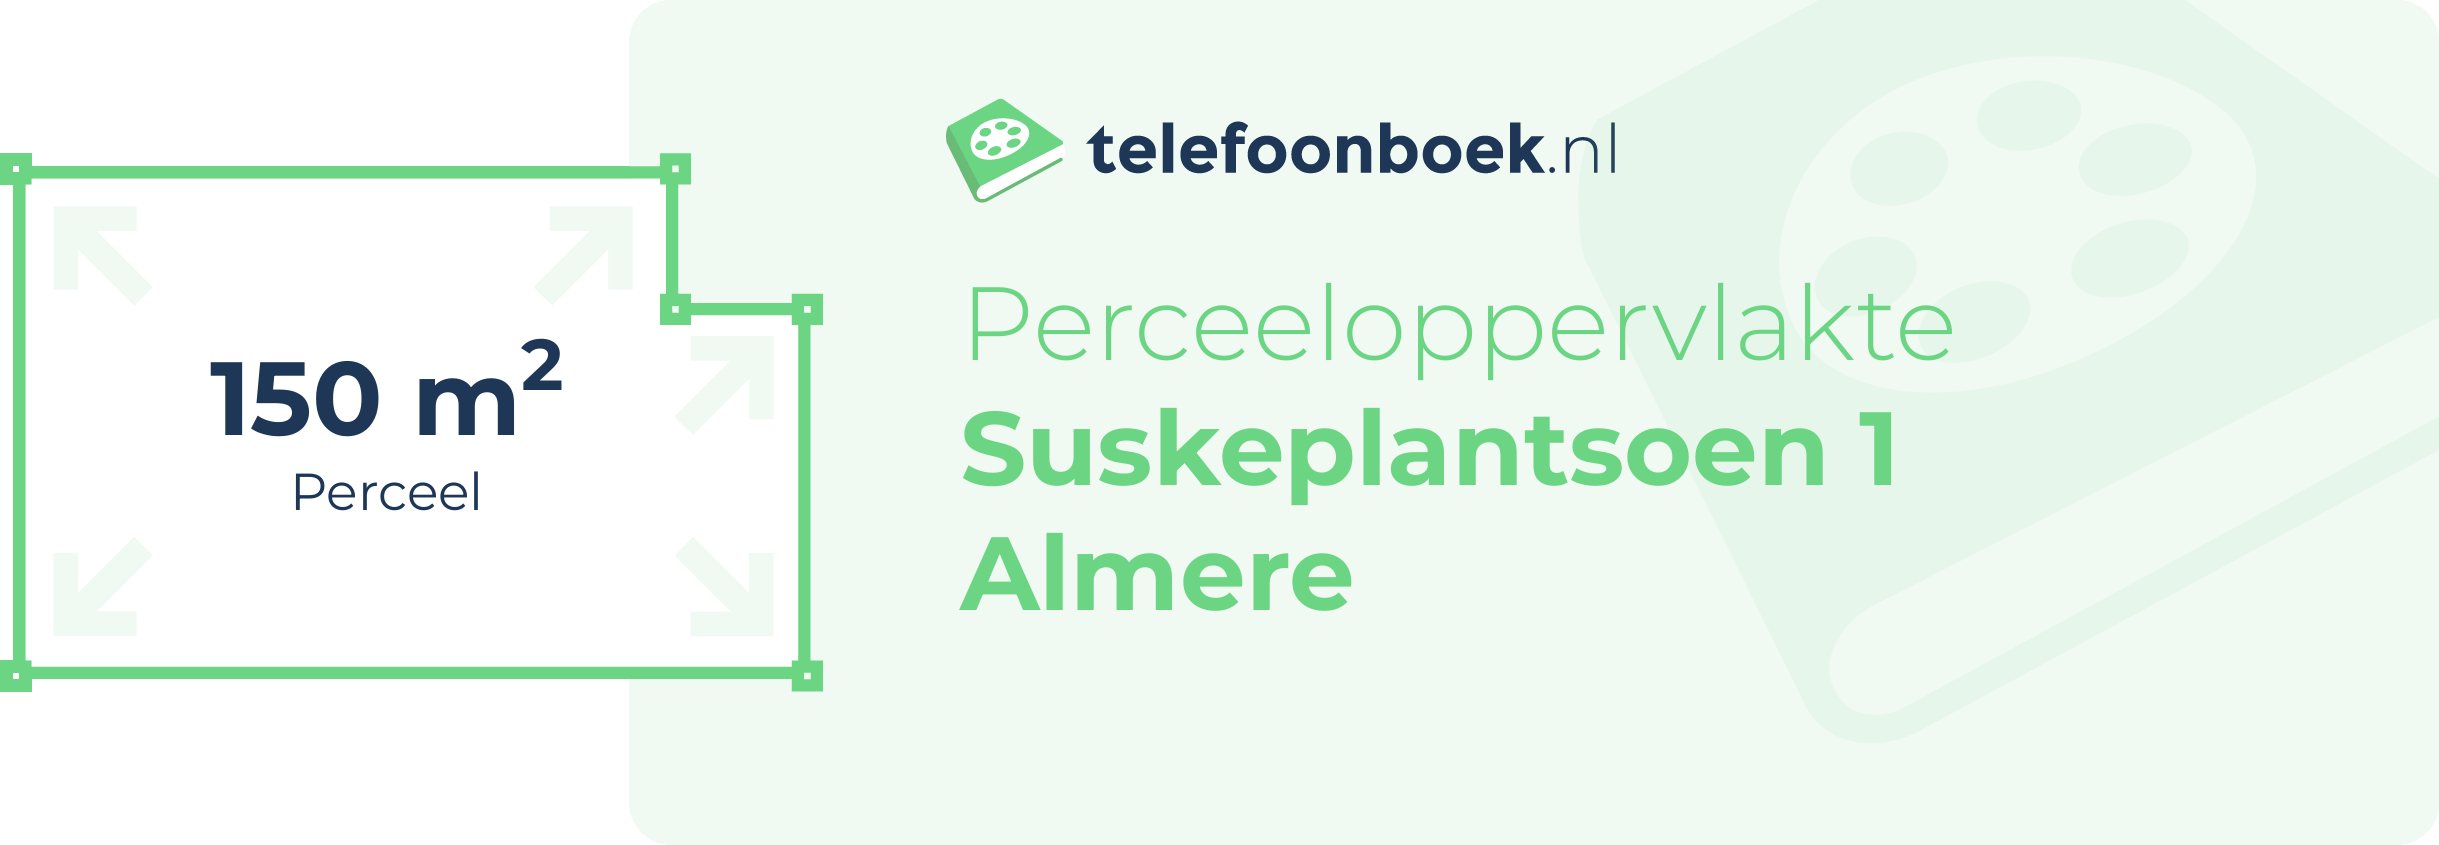 Perceeloppervlakte Suskeplantsoen 1 Almere